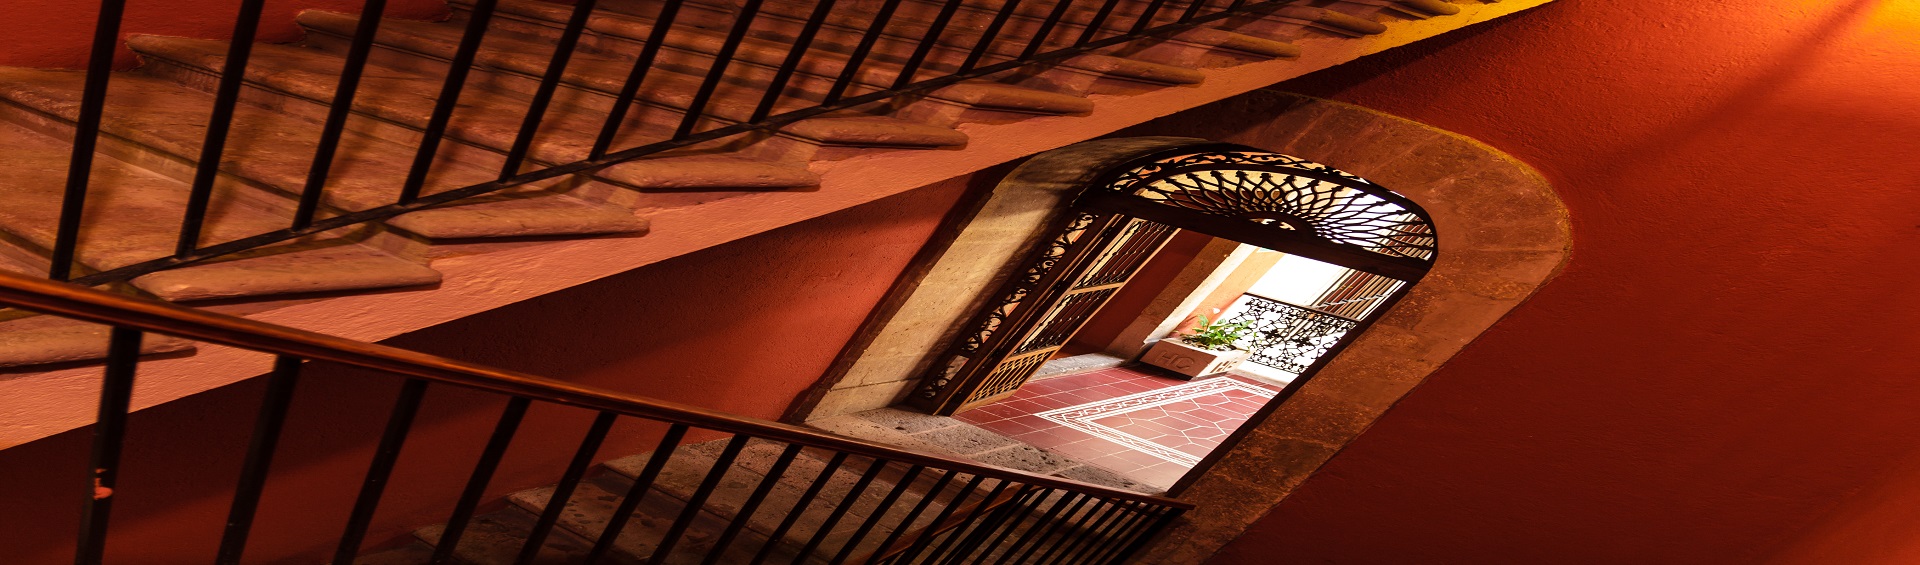 Escaleras hacia Habitaciones Misión Catedral Morelia